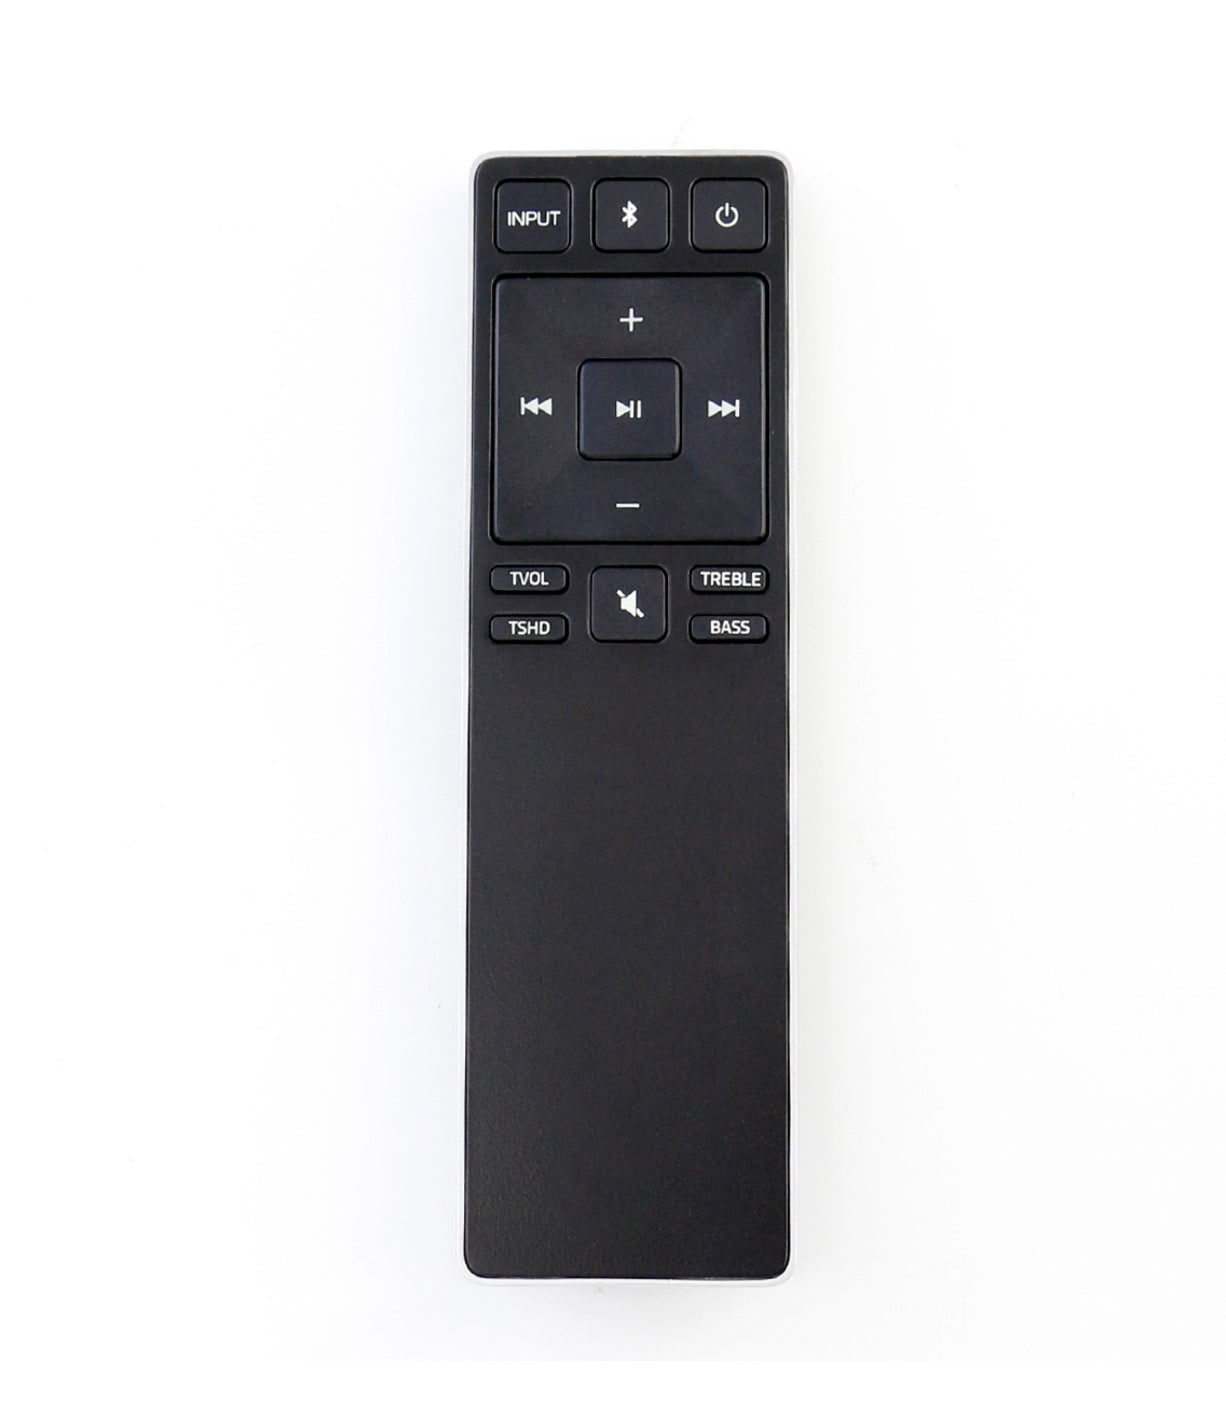 Brand New Vizio Original Xrs321 C Remote Control For Vizio Sound Bar